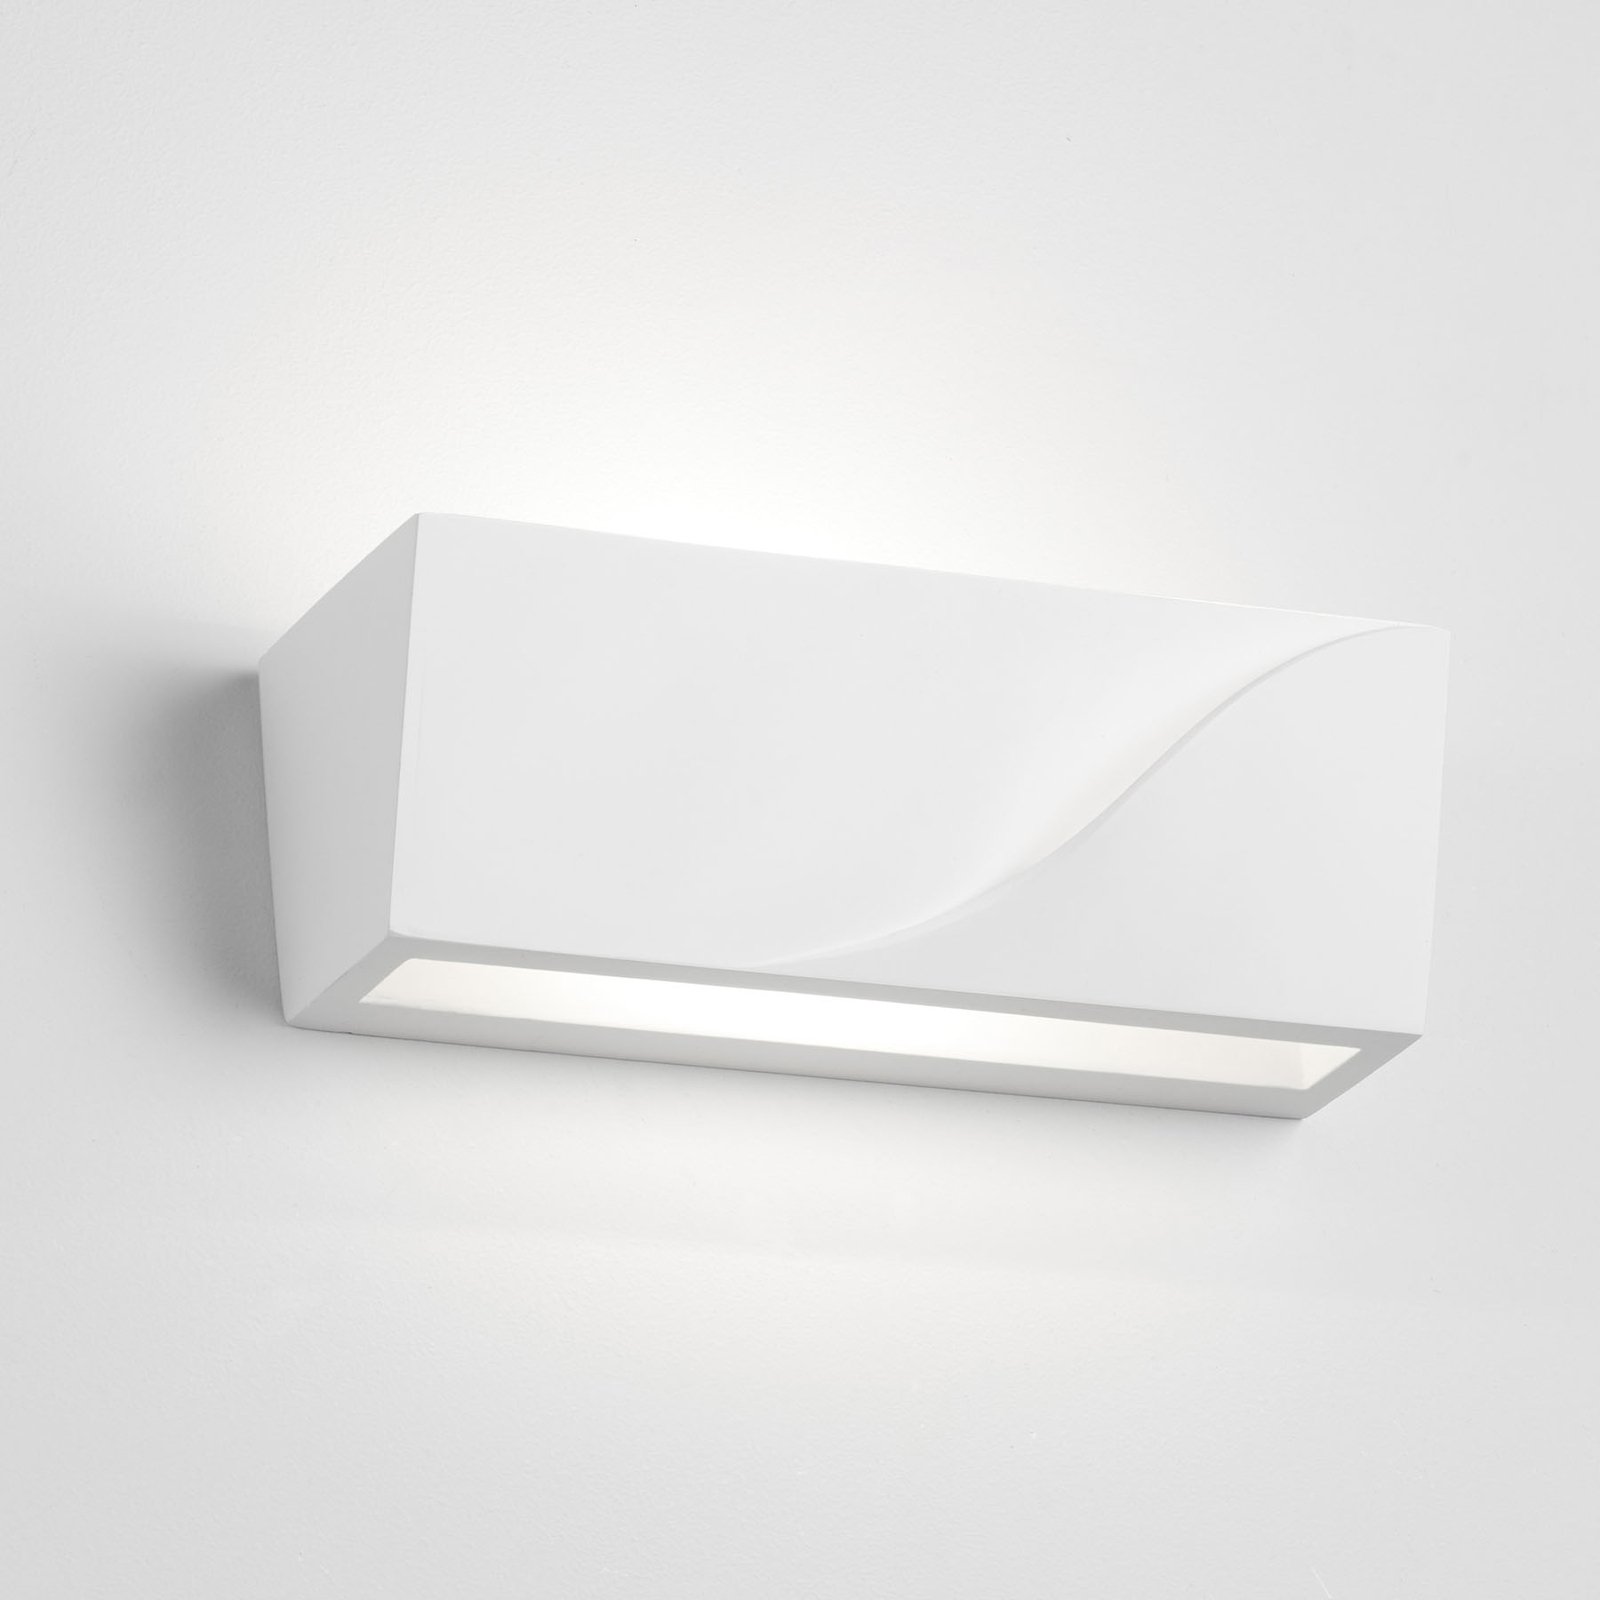 Pellene wall light, width 22 cm